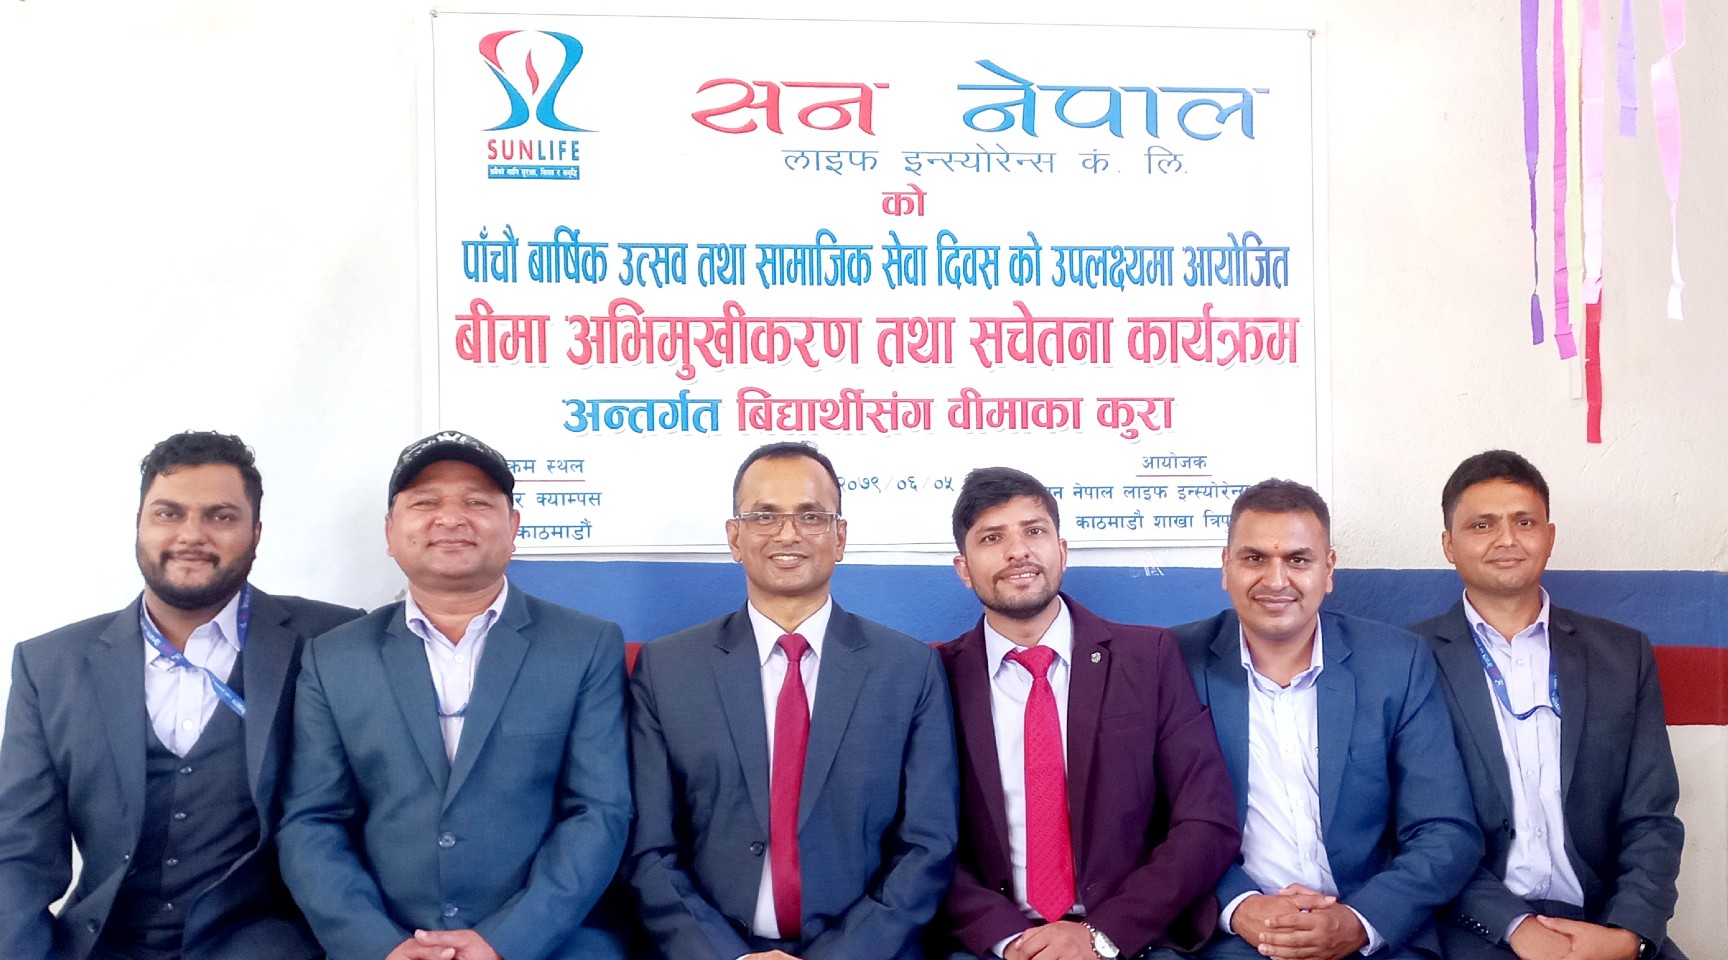 सन नेपाल लाइफ इन्स्योरेन्सद्धारा बिद्यार्थीसंग बिमाका कुरा कार्यक्रम सम्पन्न